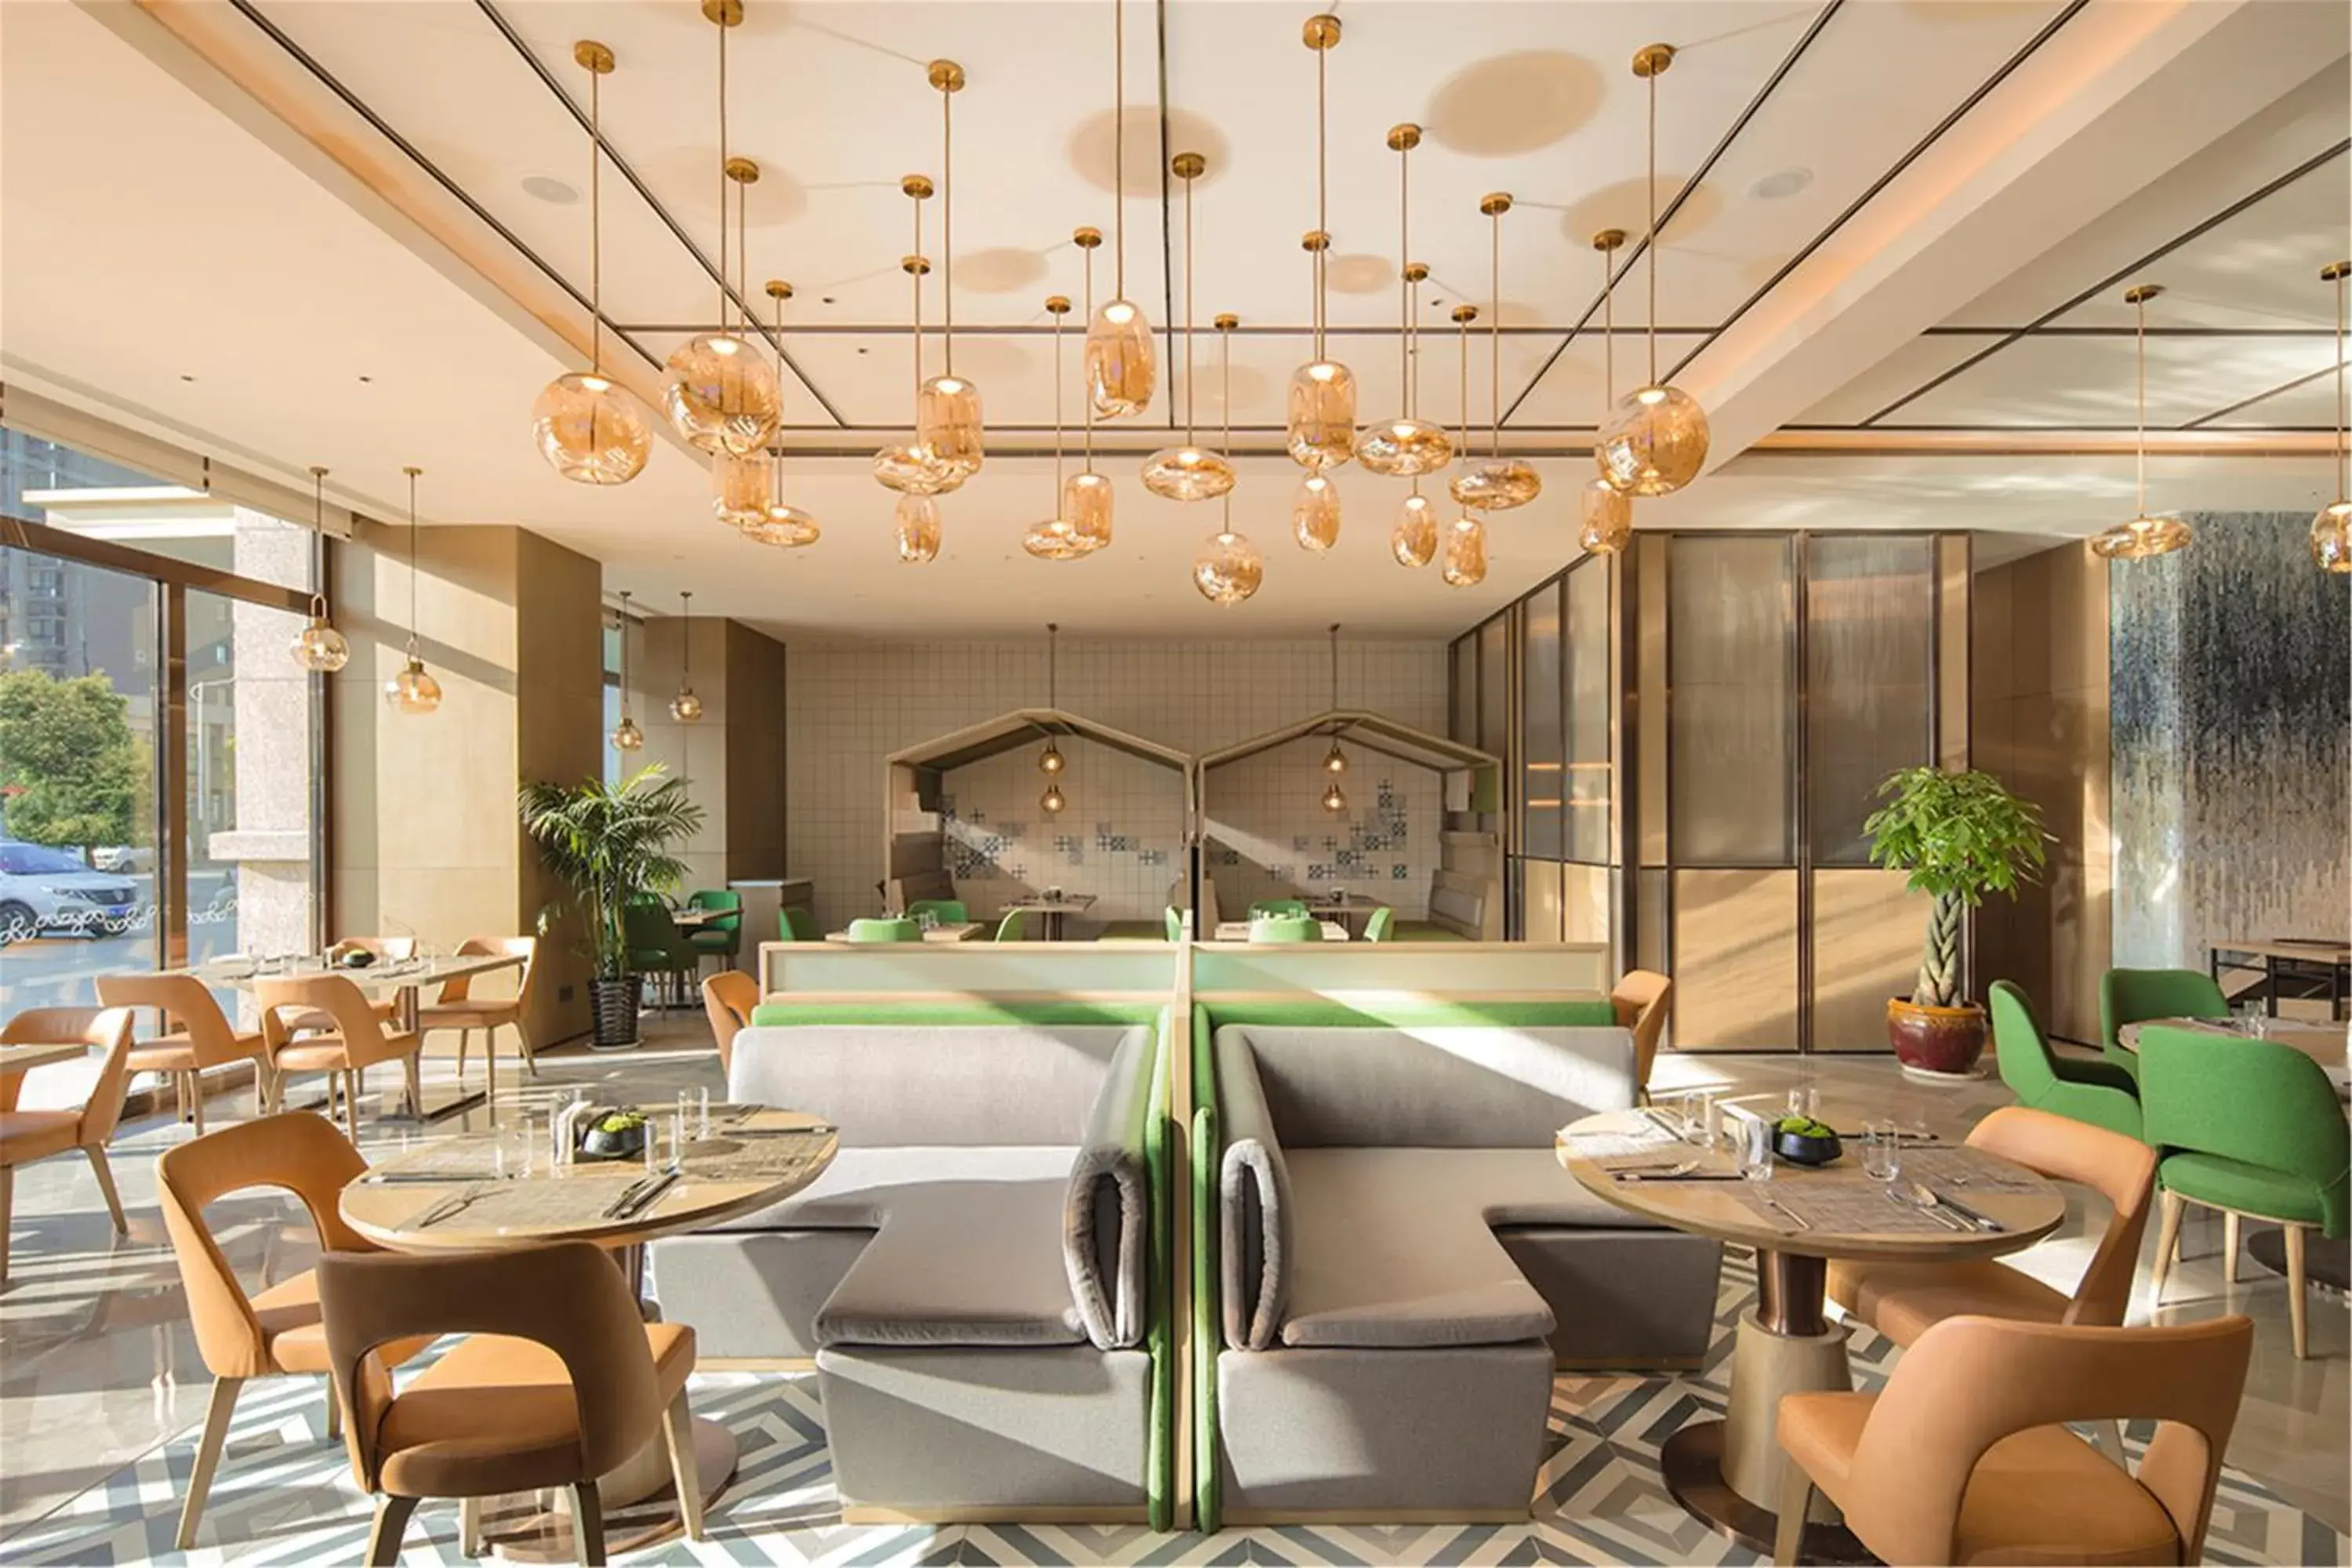 Restaurant/places to eat, Swimming Pool in Hilton Garden Inn Xuzhou Yunlong